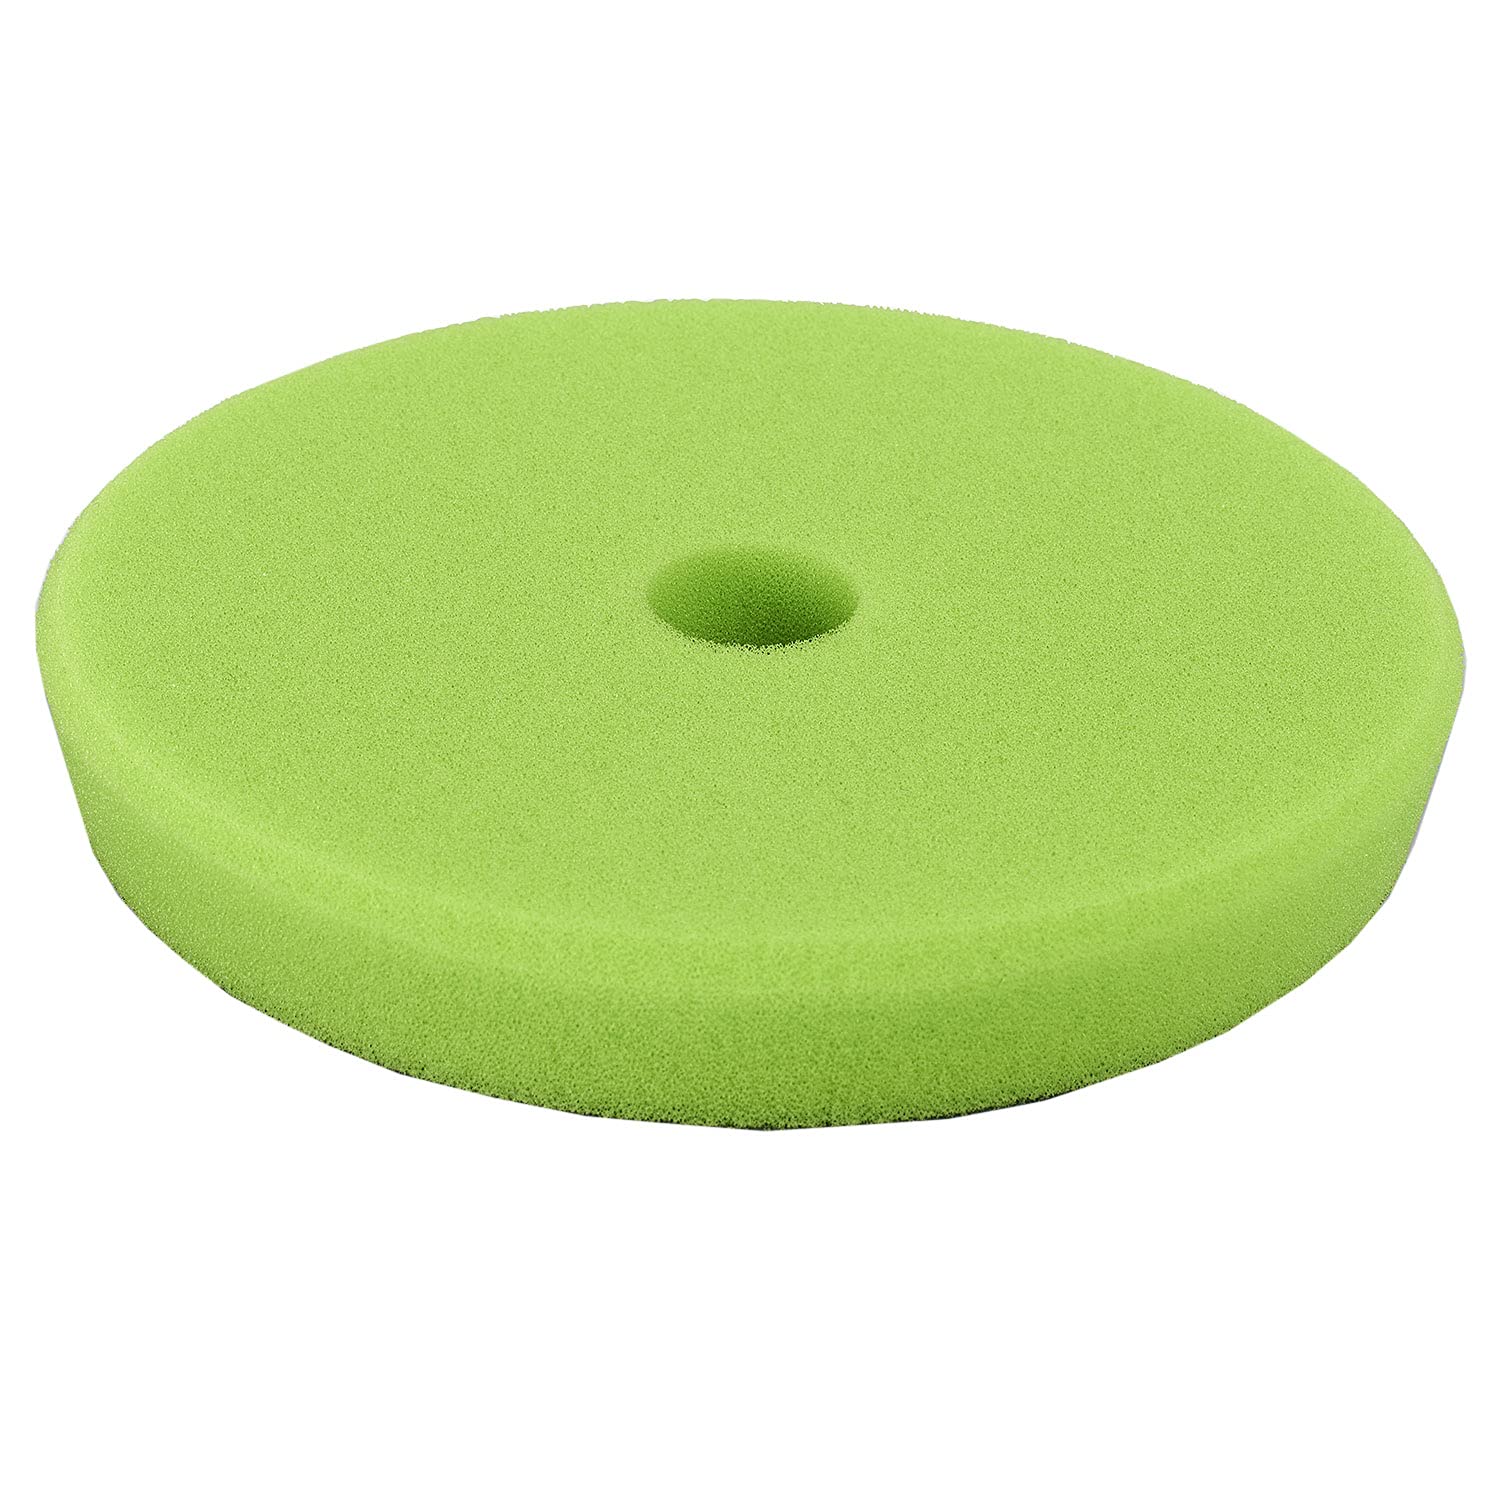 Polytop Finish Pad Excenter grün 165 x 25 mm - Polierpad für Exzenter Poliermaschinen - Auto Politur Zubehör von Polytop